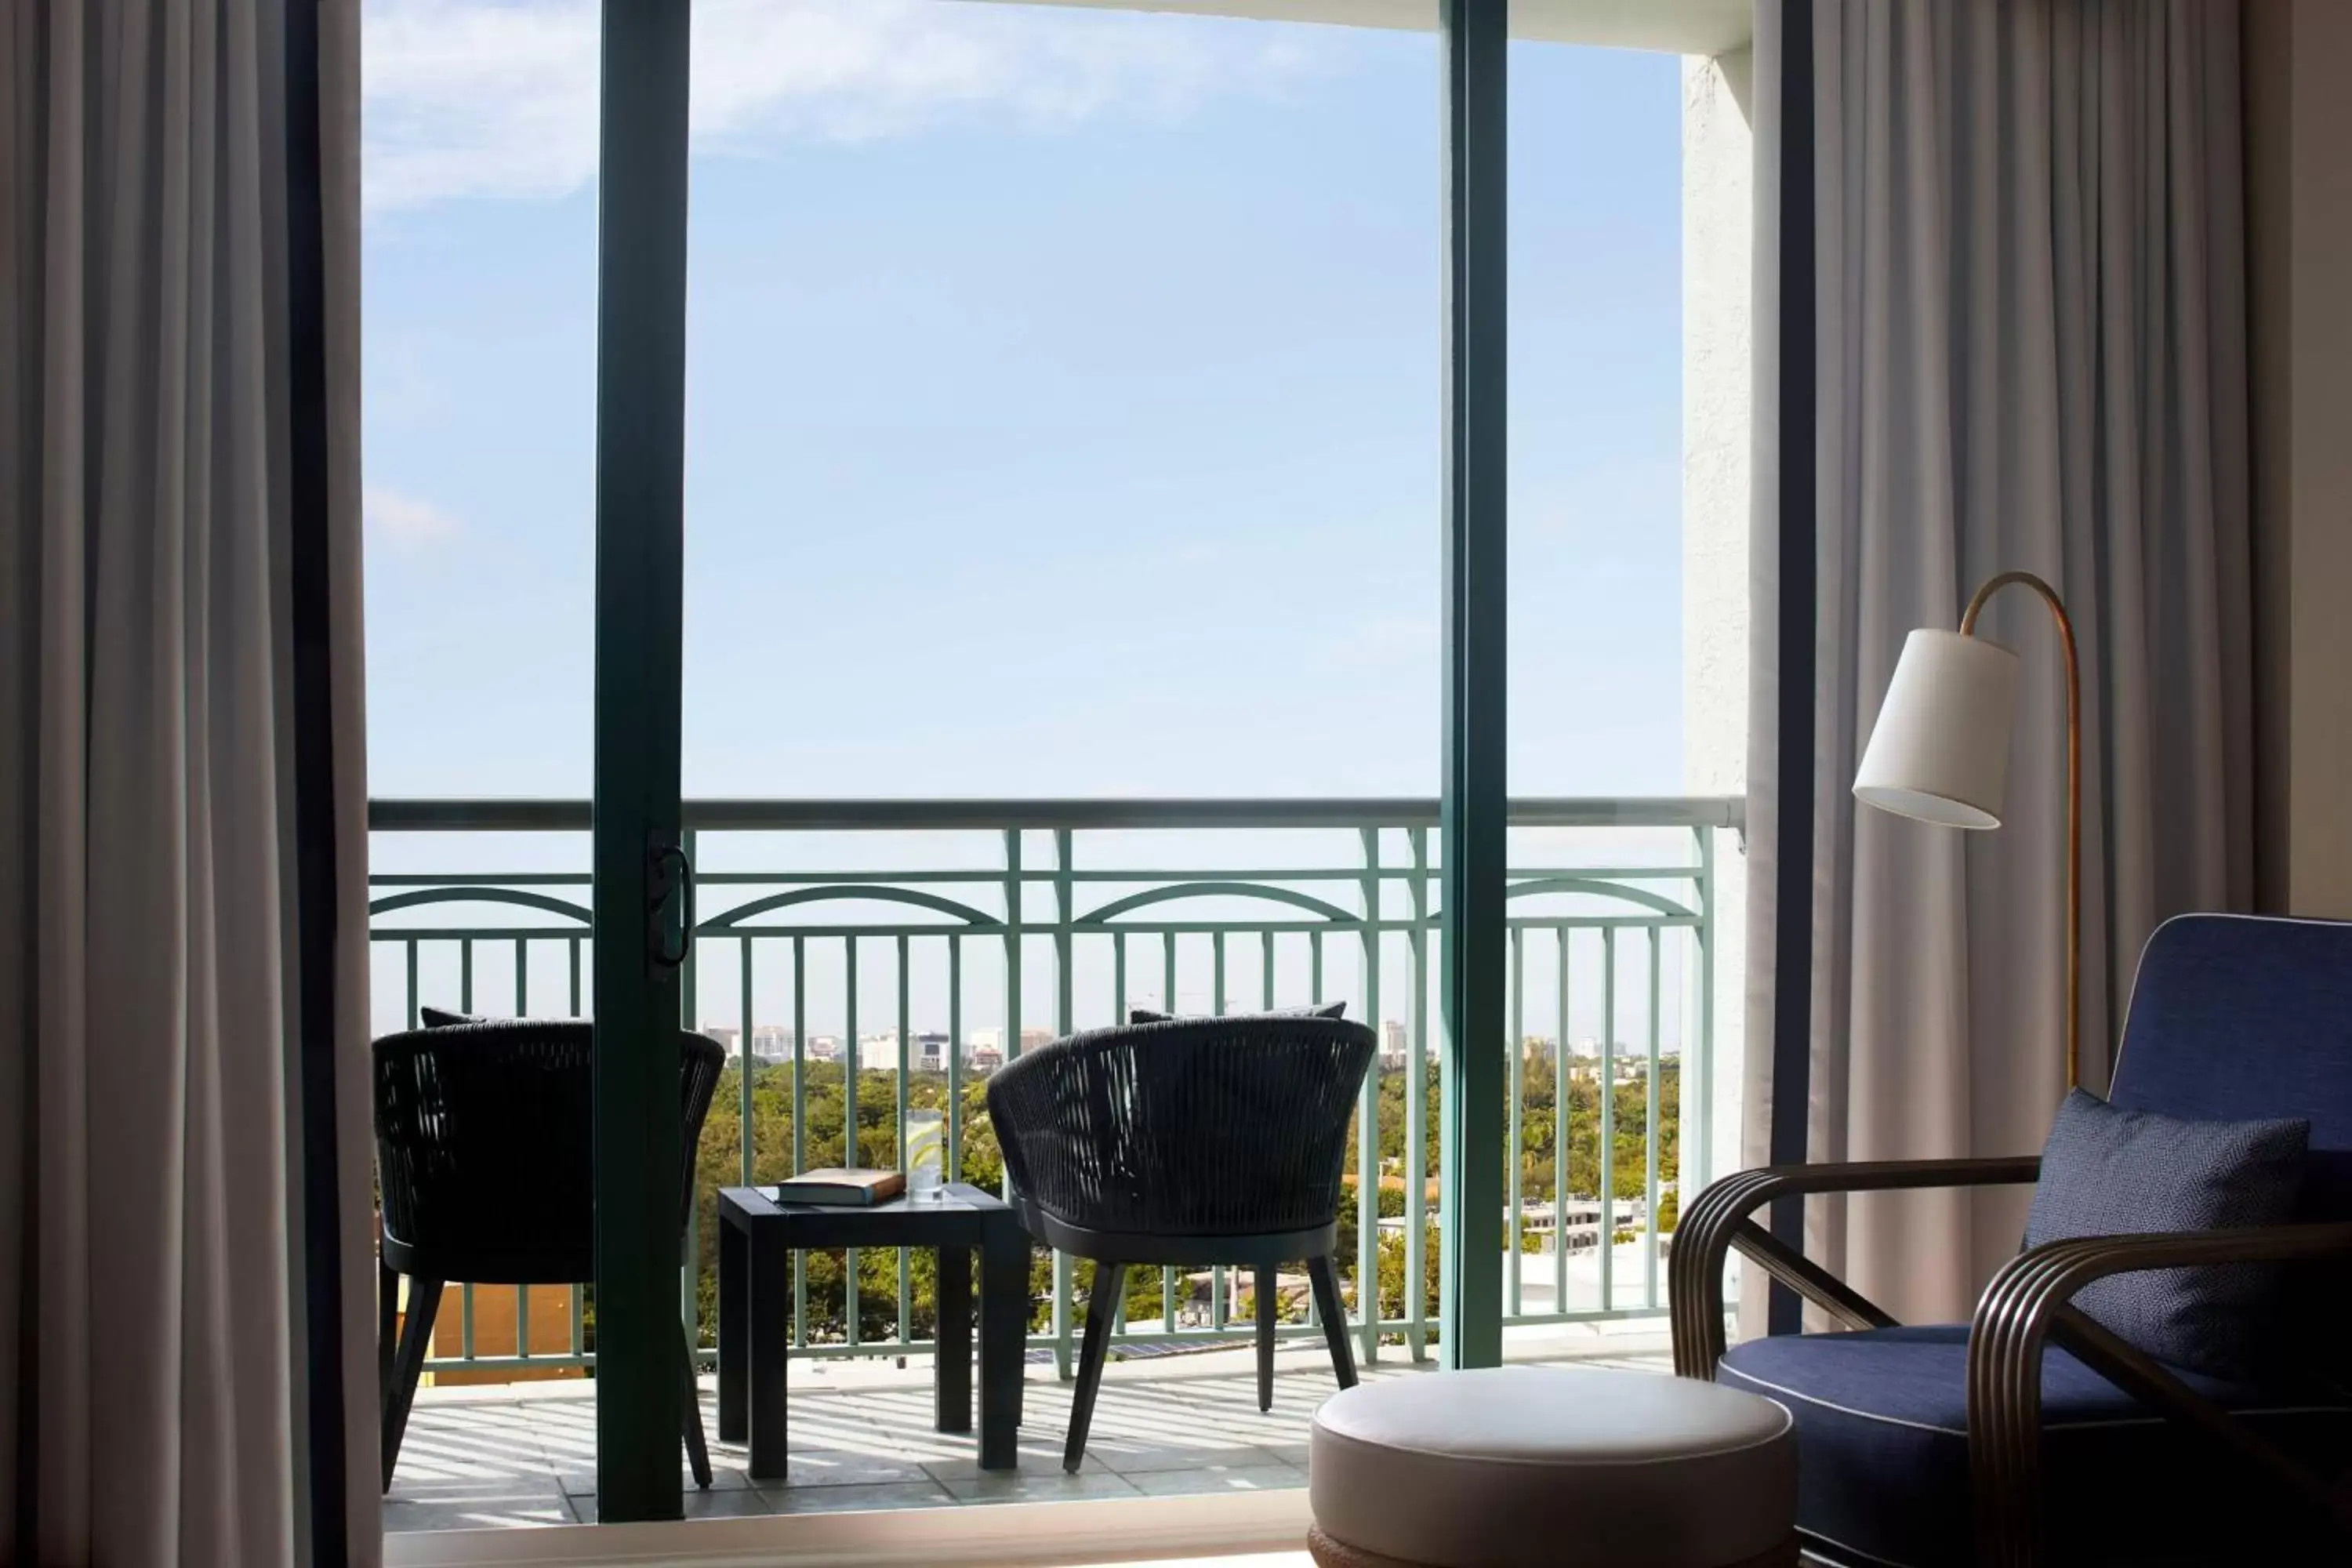 Photo of the whole room in The Ritz-Carlton Coconut Grove, Miami